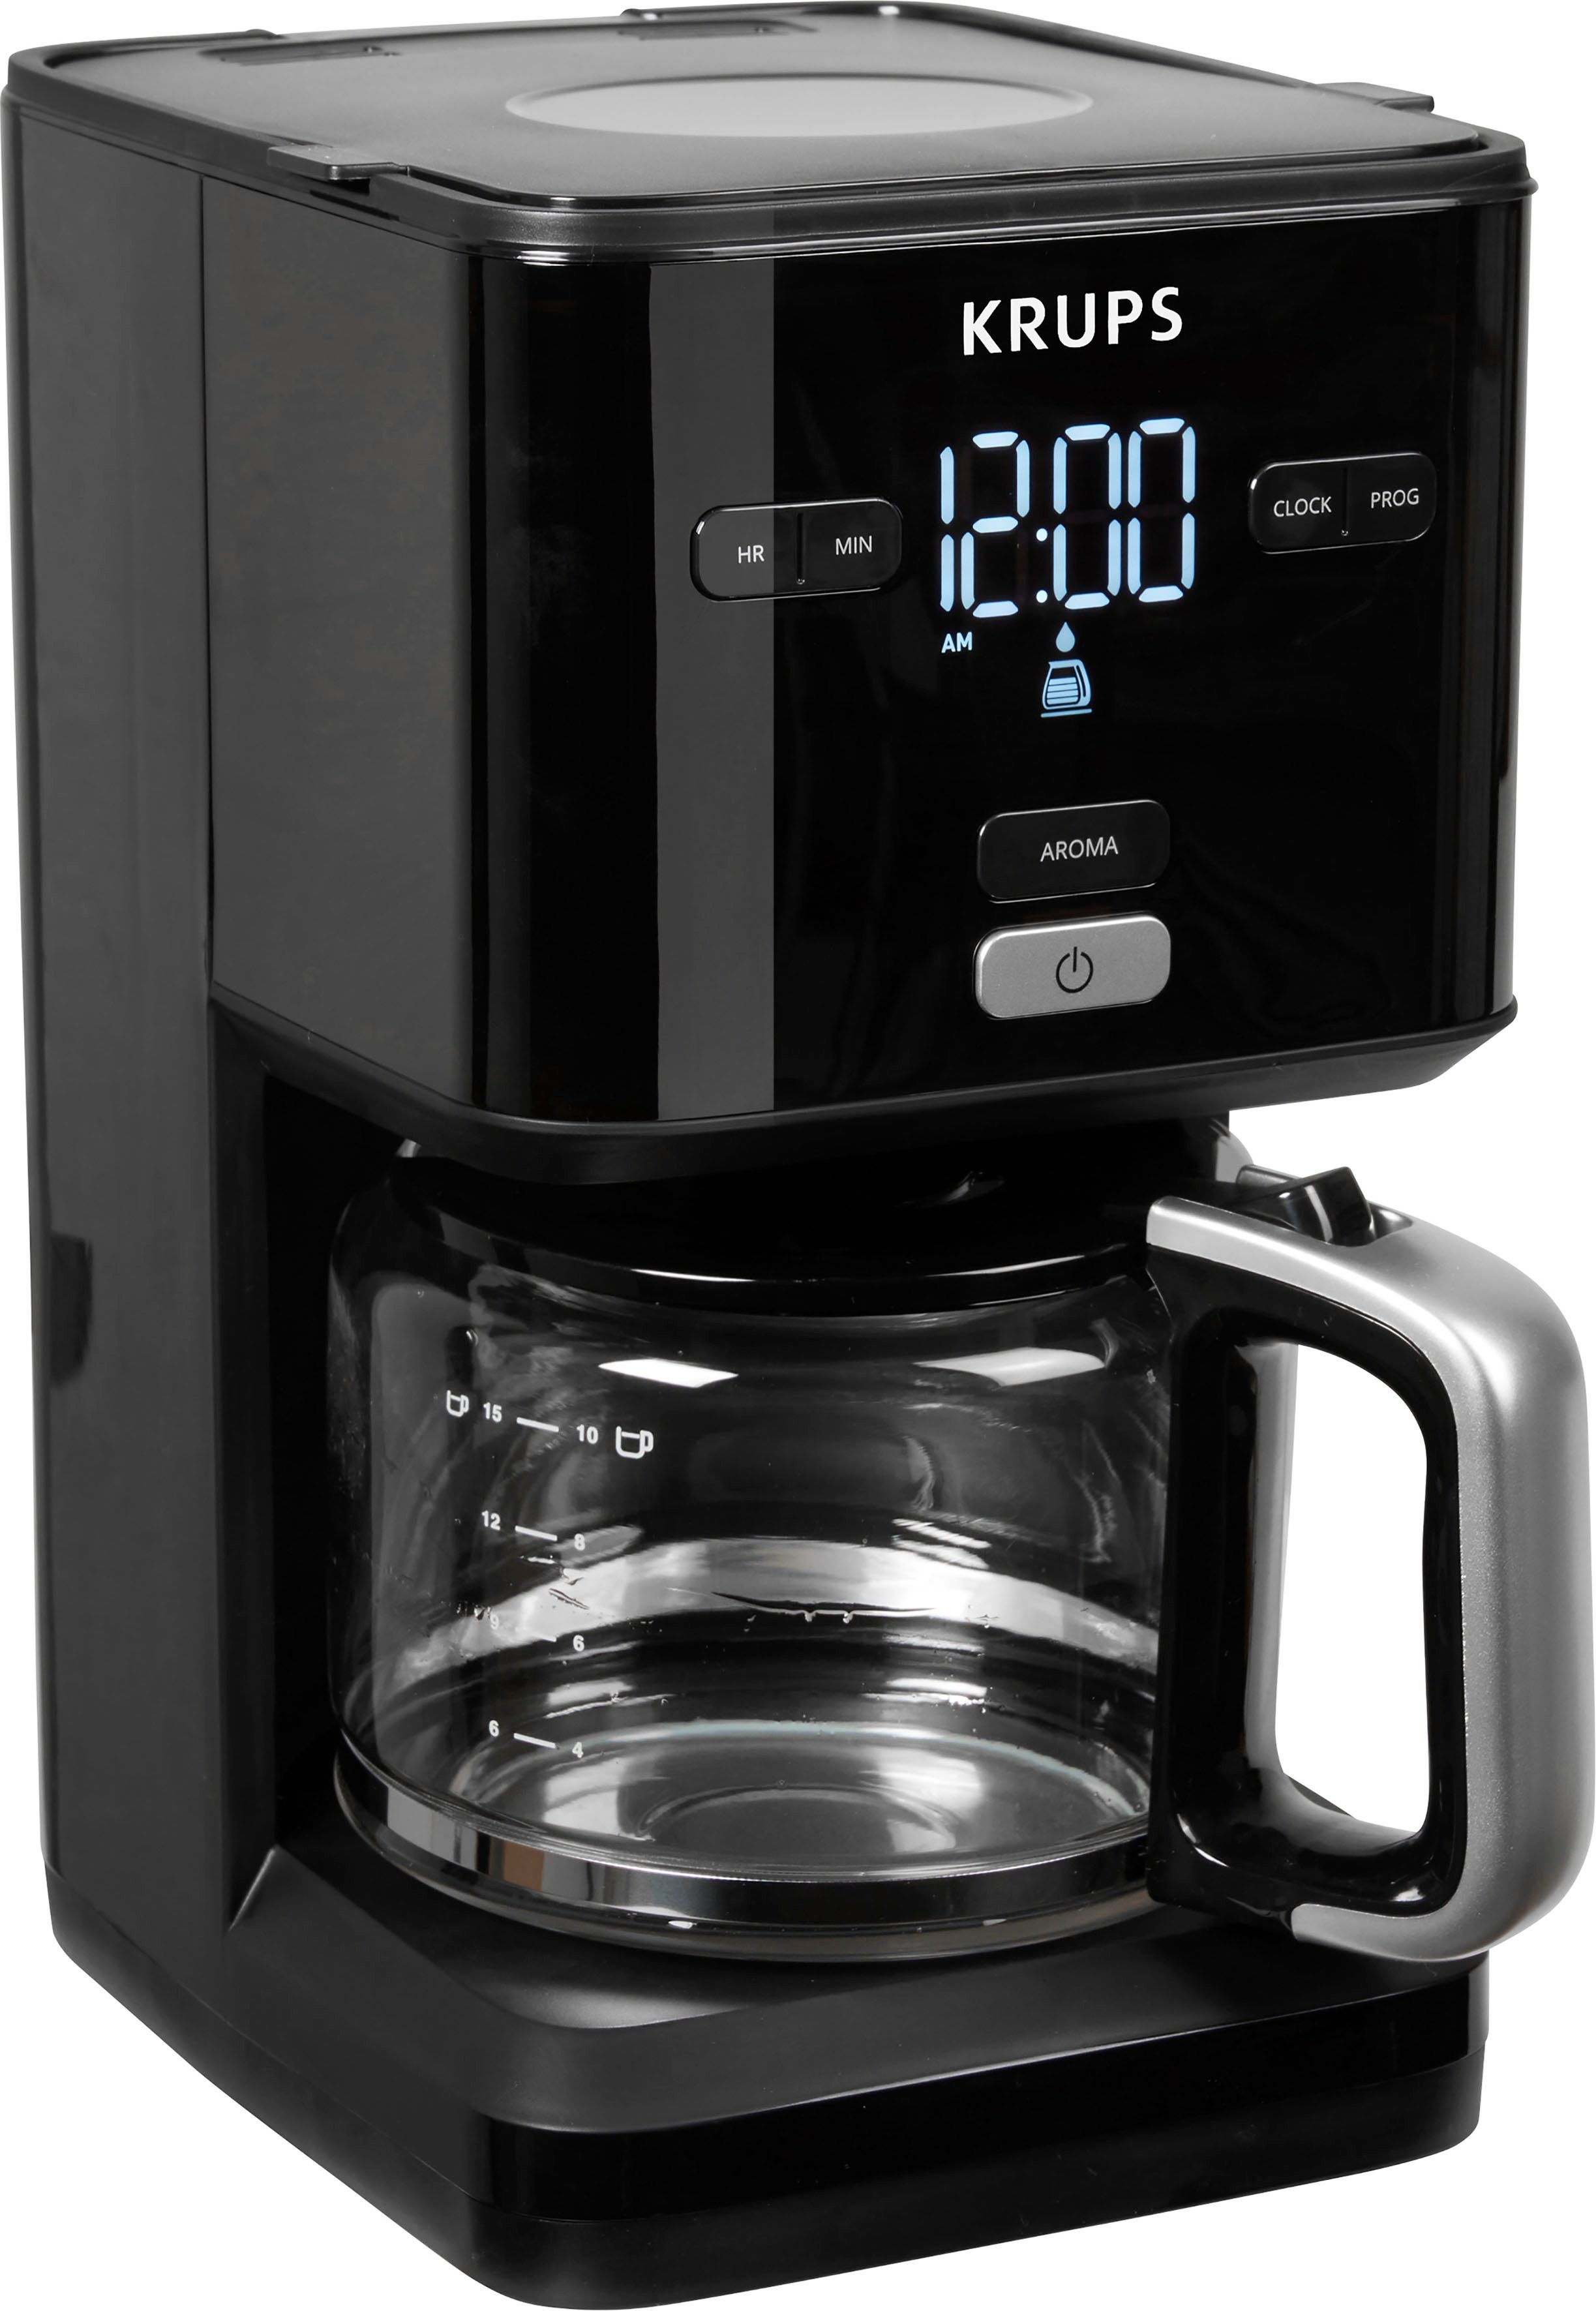 Krups Filterkaffeemaschine KM6008 Smart\'n Light, 1,25l Kaffeekanne,  24-Std-Timer, automatische Abschaltung nach 30 Minuten, Anti-Tropf-System  für Entnahme der Glaskanne, selbst während des Brühvorgangs